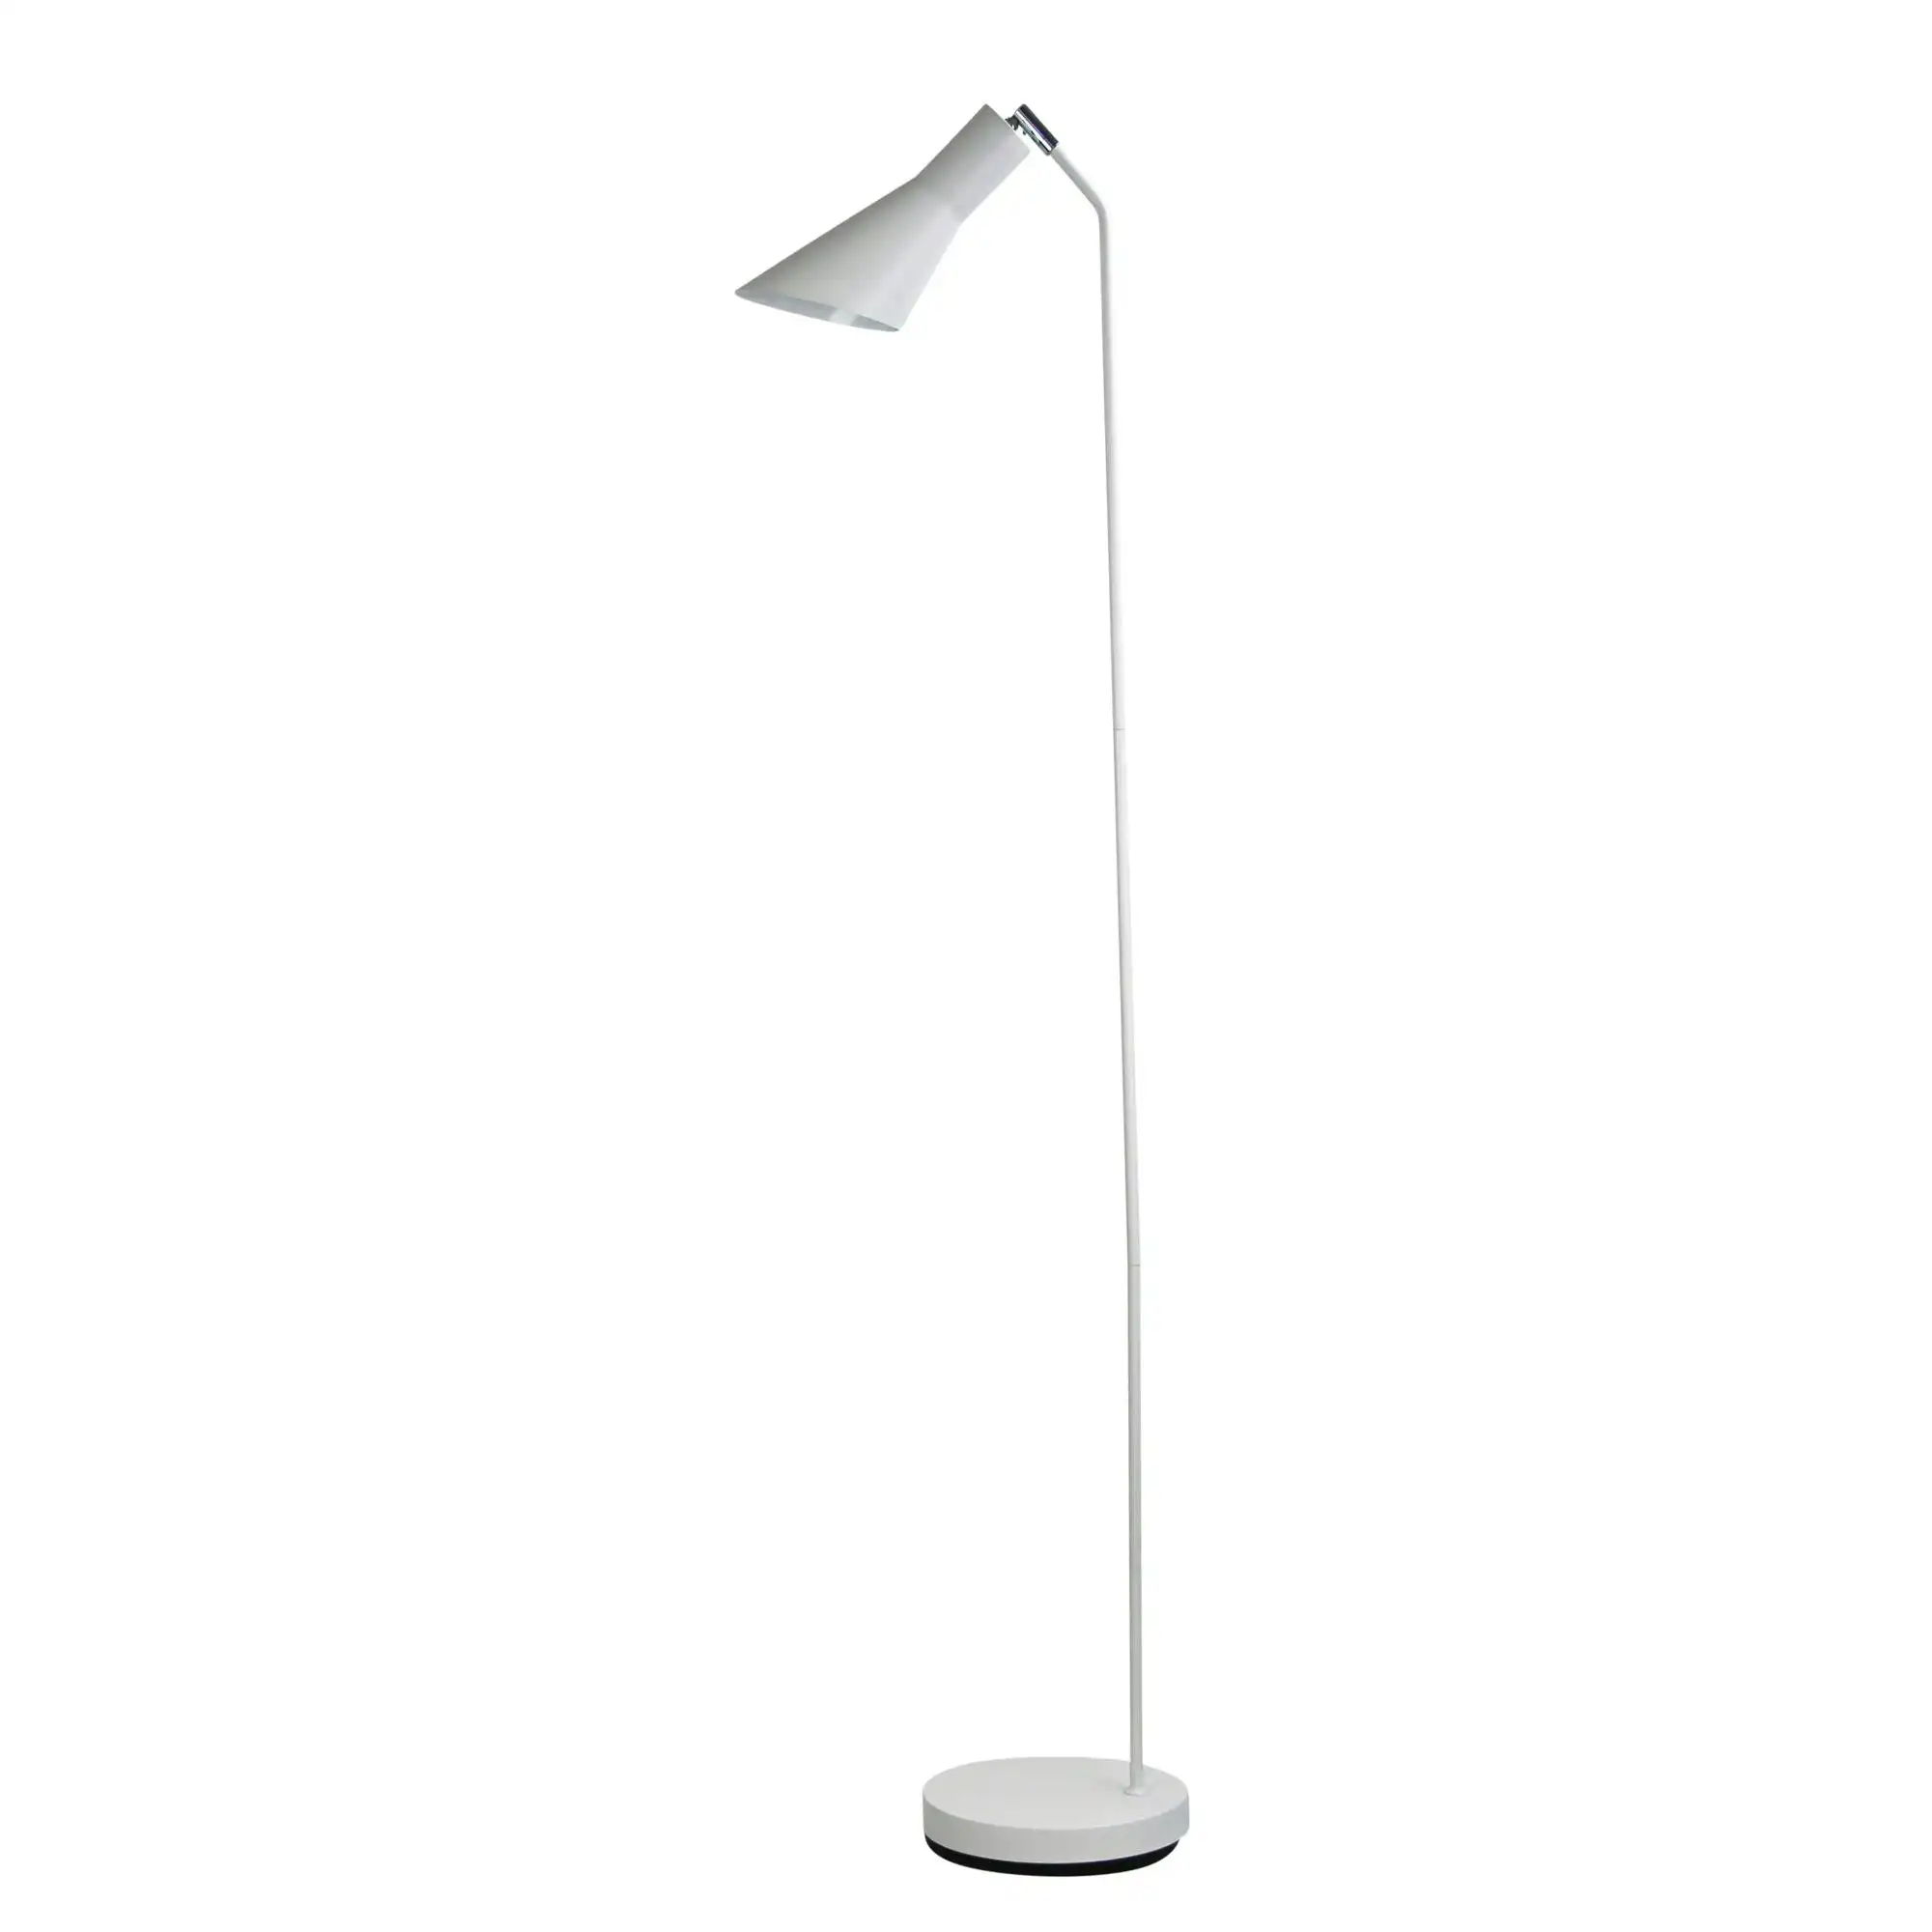 THOR FLOOR LAMP White Floor Lamp